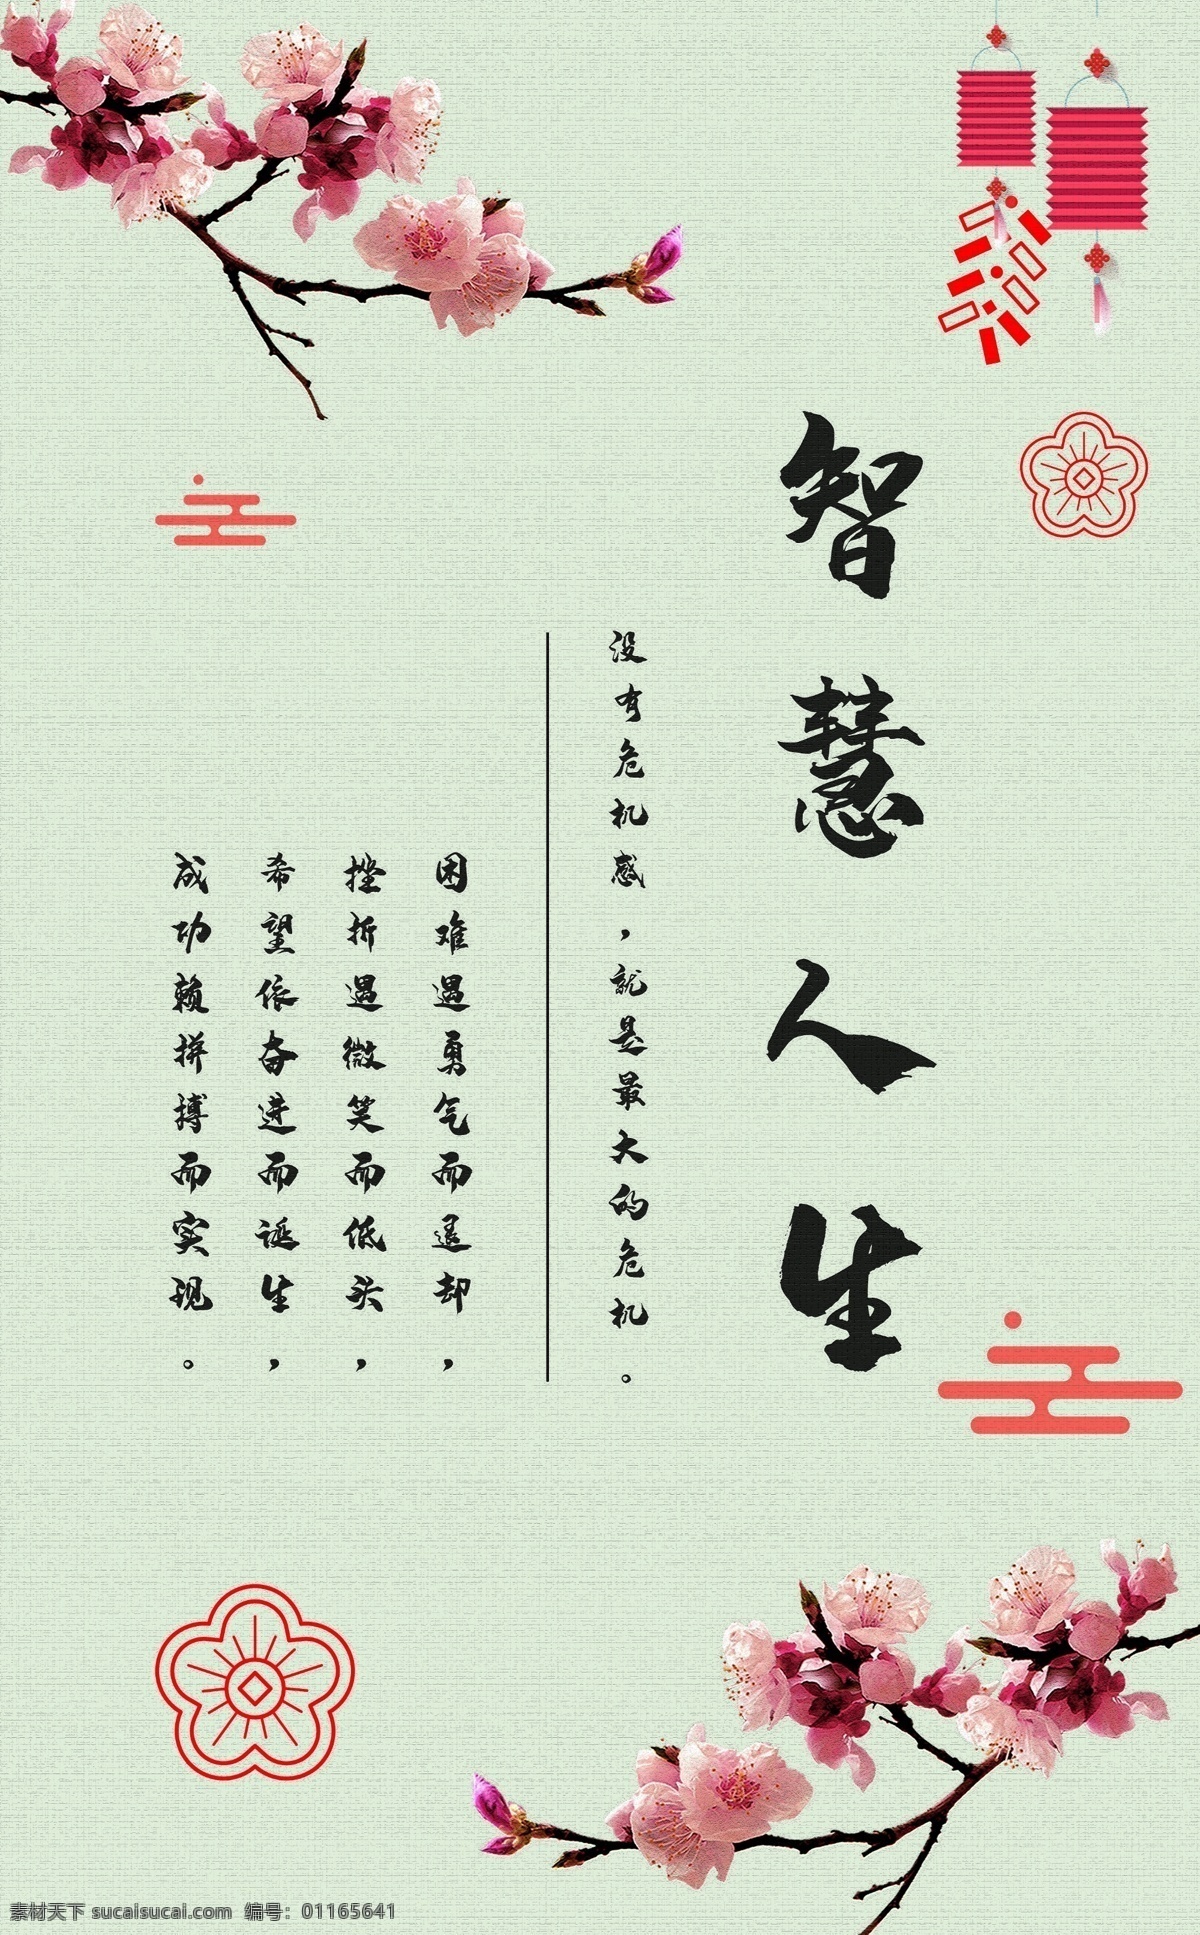 1011 中国 风 企业 文化 标语 走廊 书房 装饰画 共赢 中国风 文化标语 家居画 油画